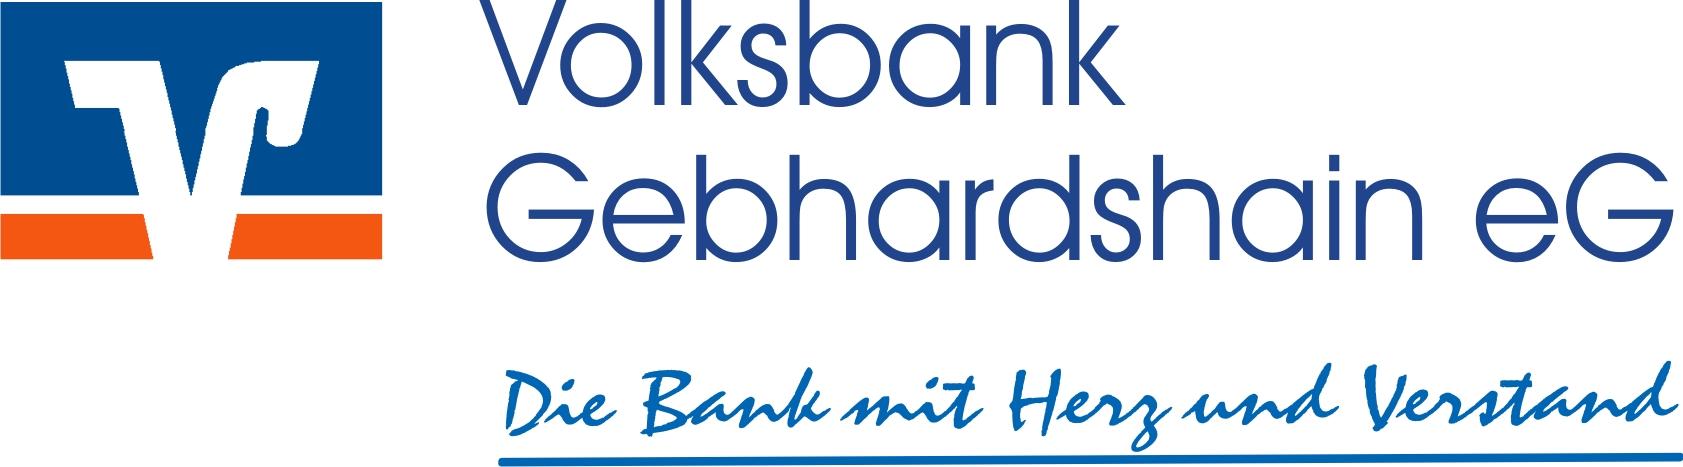 Volksbank Gebhardshain